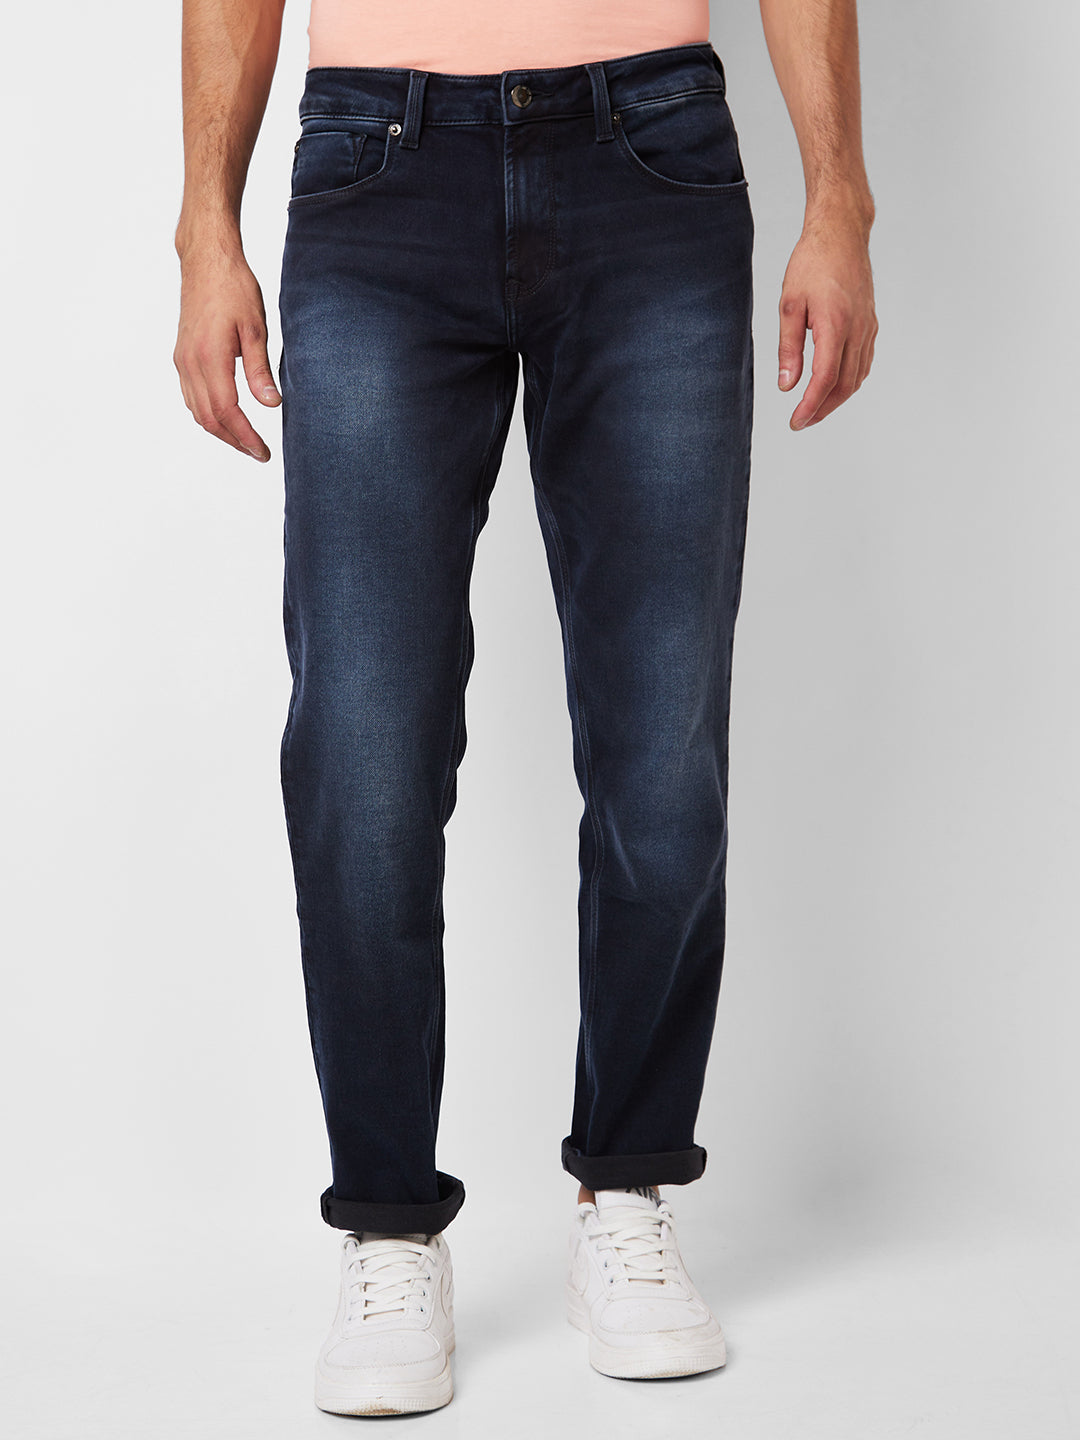 Men's Loose Fit Ankle Denim Jeans | Men jeans pants, Pants, Jeans pants